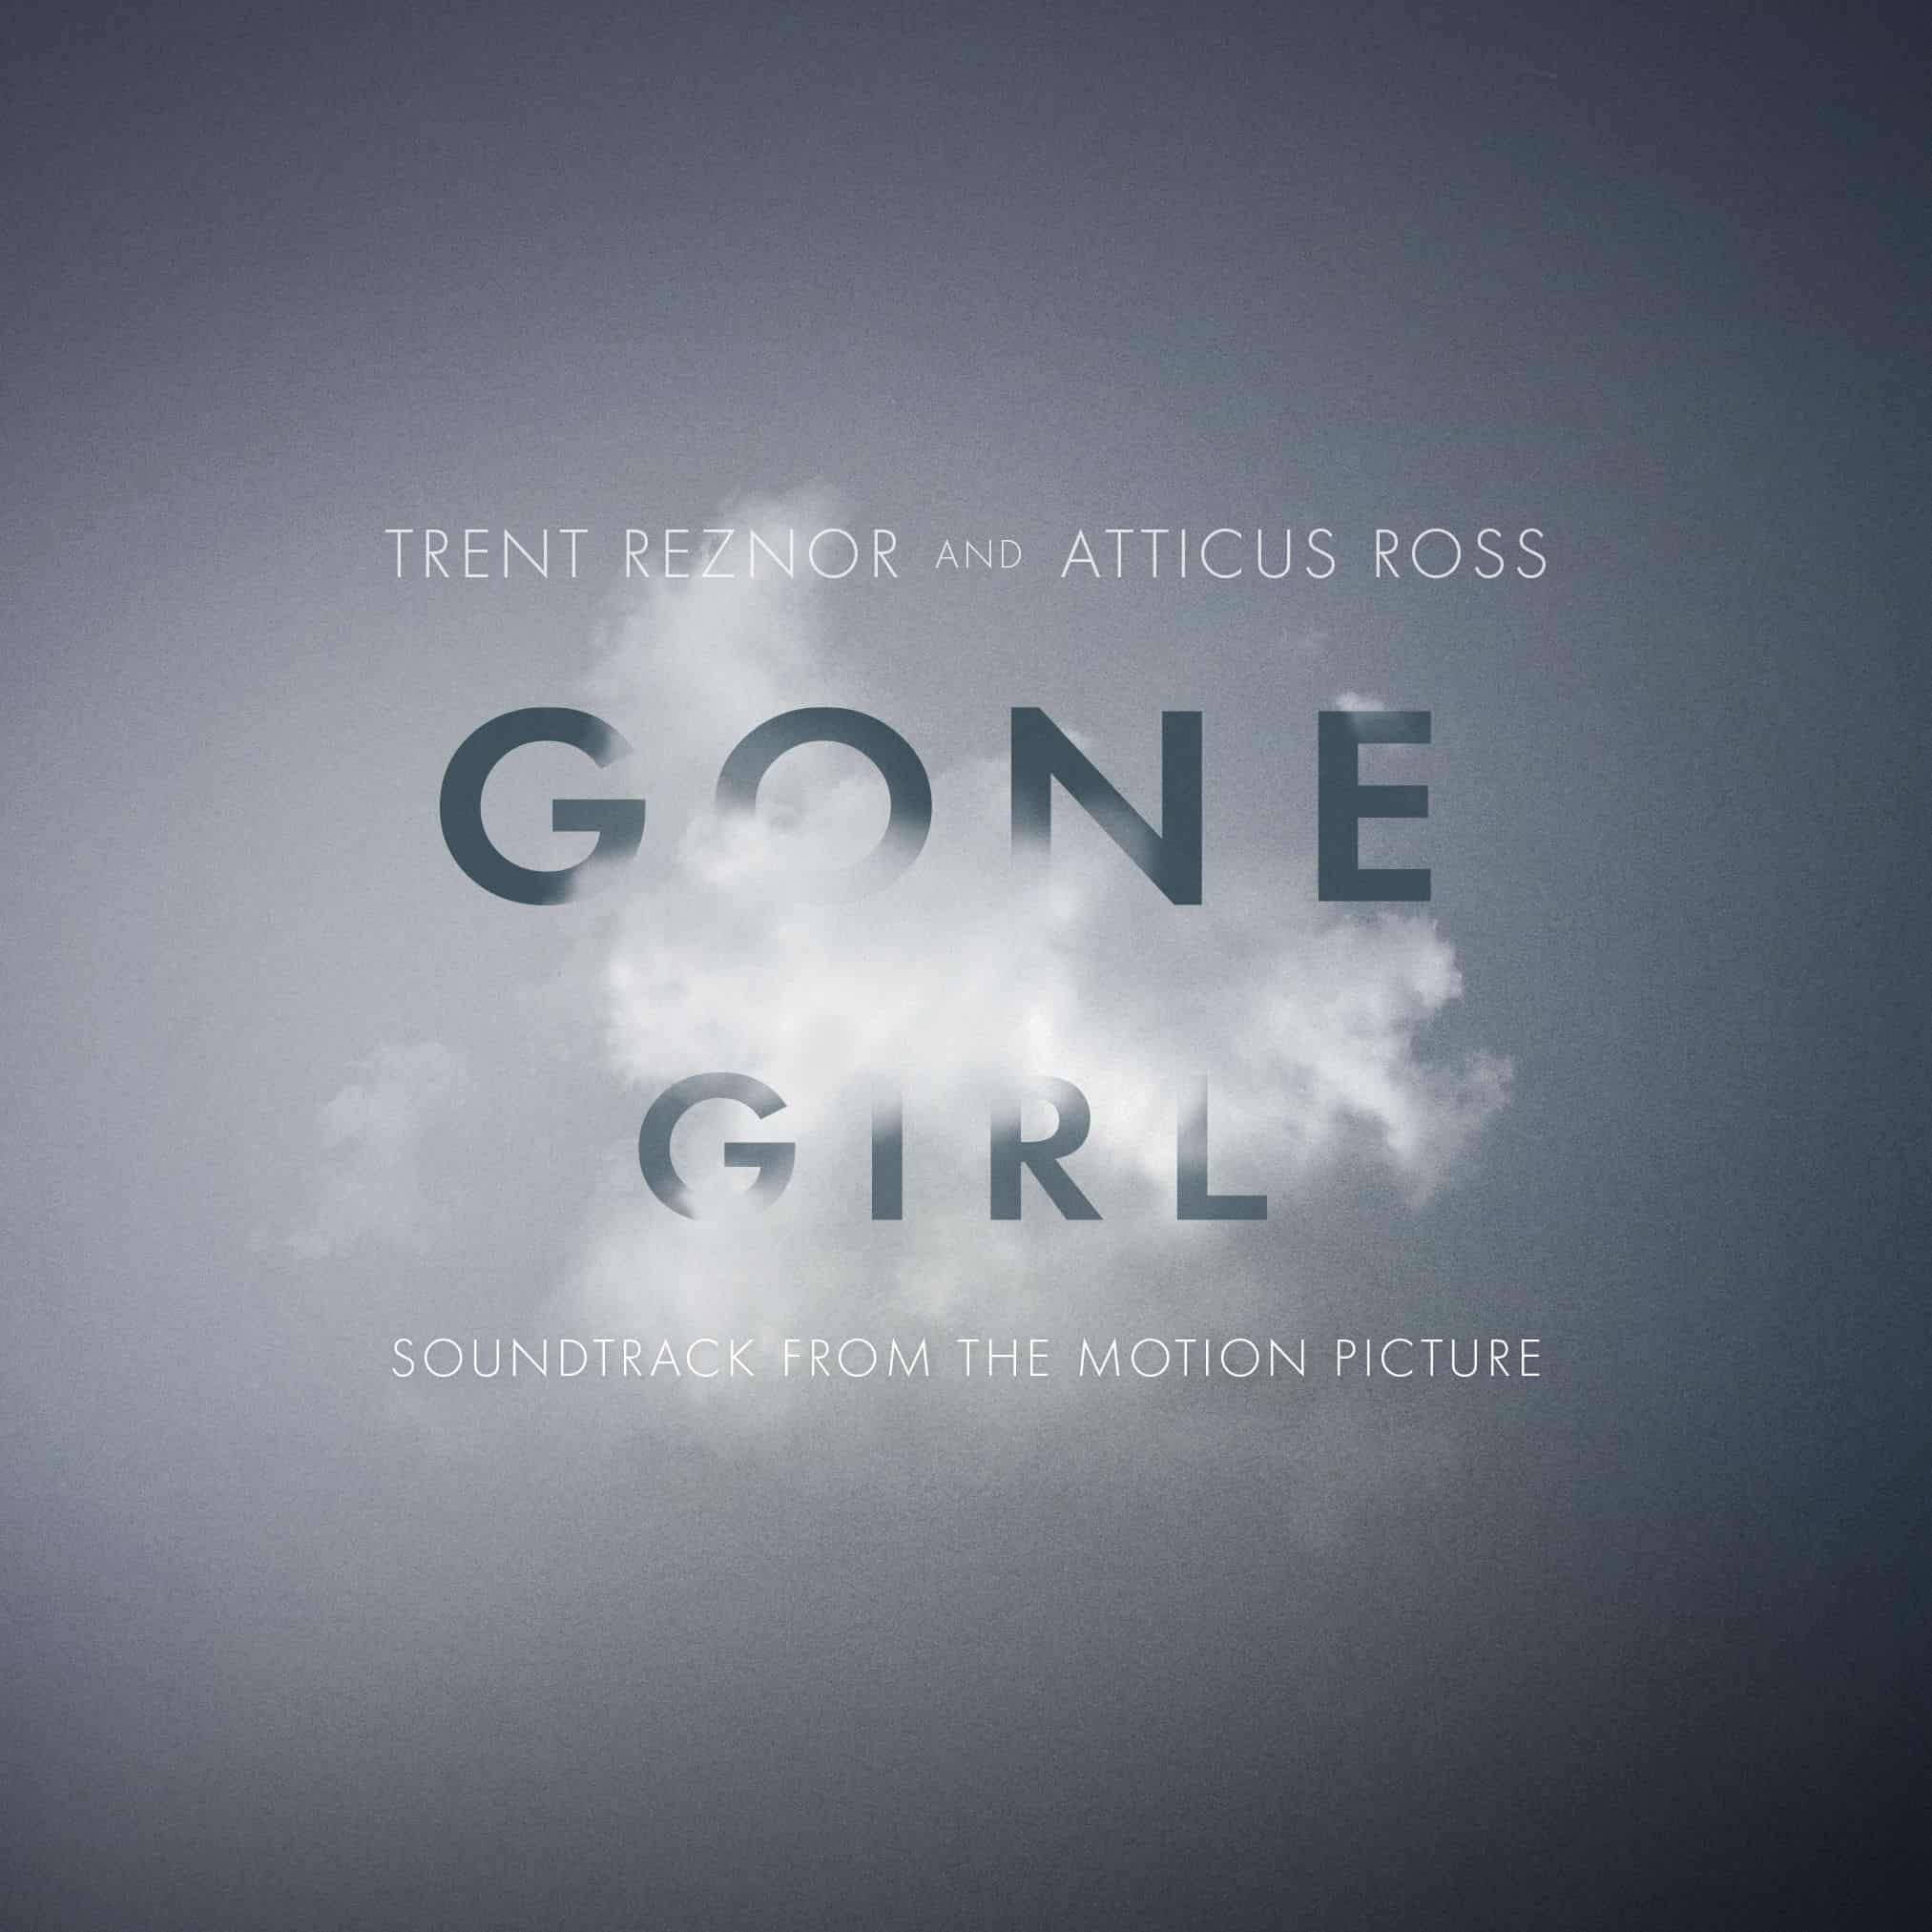 Gone Girl - zaginiona płyta Trenta Reznora nareszcie w sprzedaży!